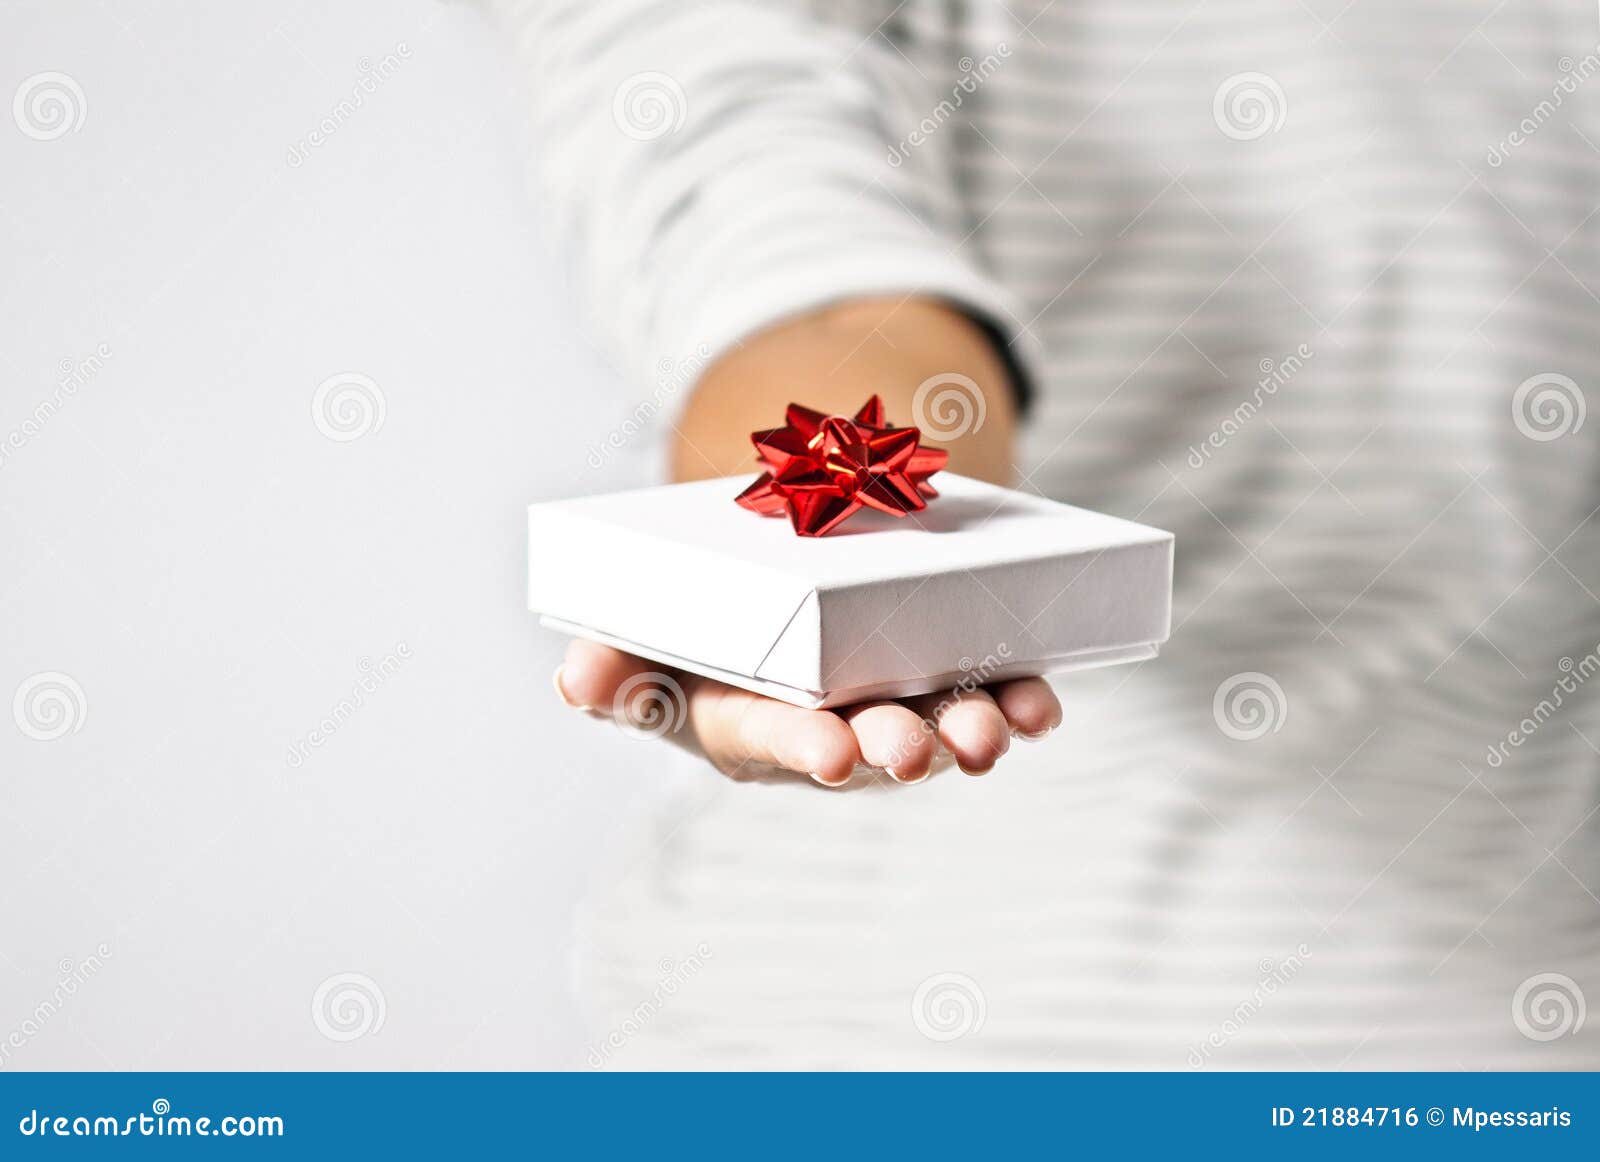 Jeune Femme Offrant Un Cadeau Photo stock - Image du anniversaire